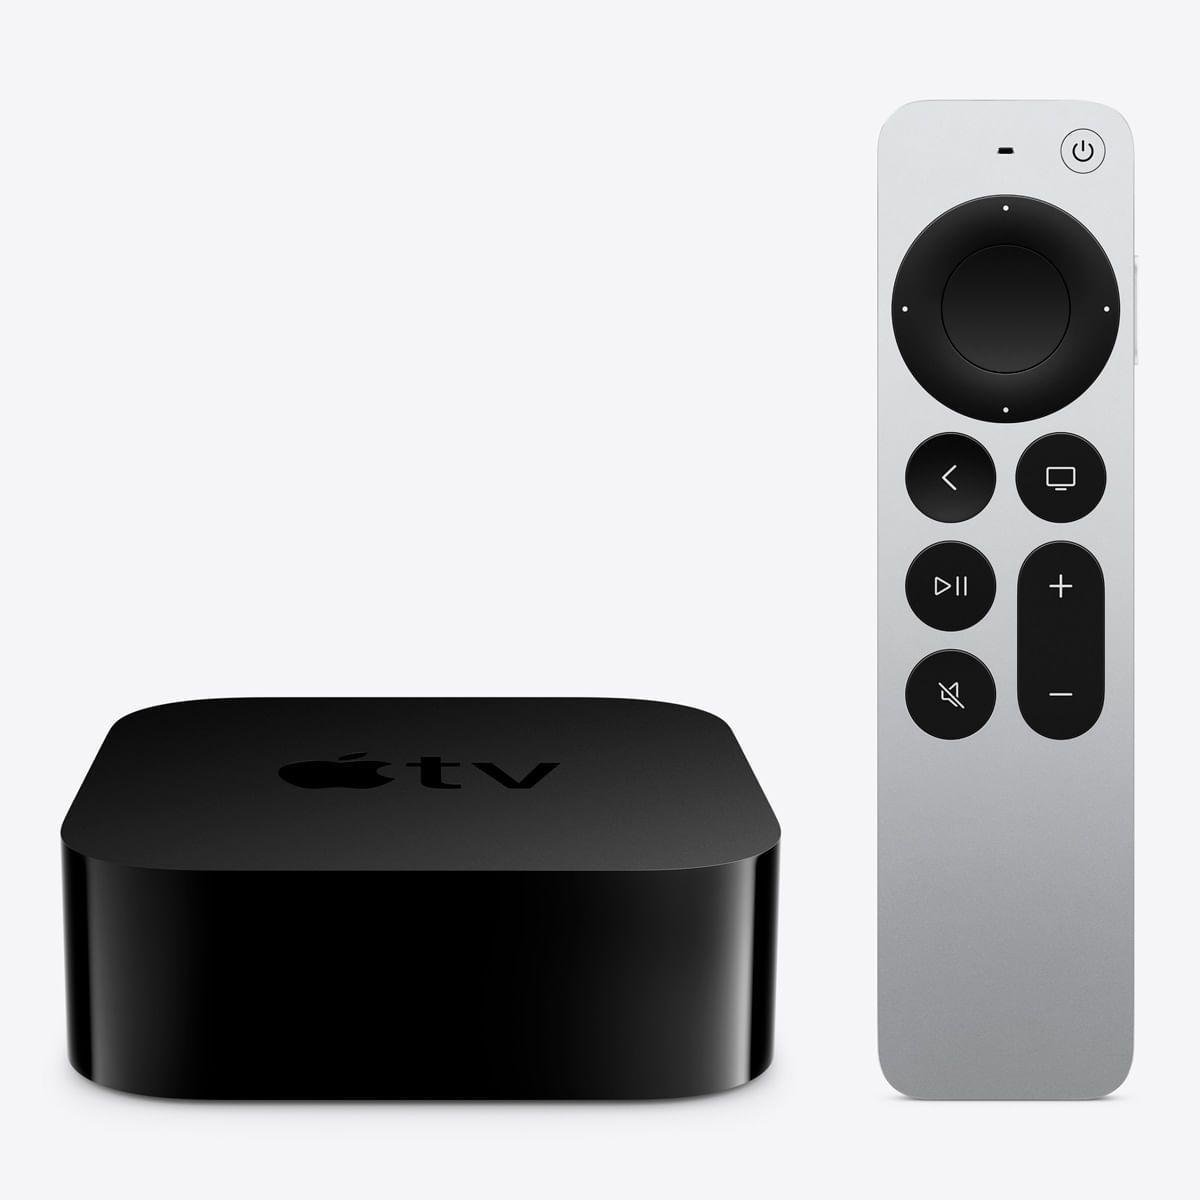 Globo Play chega à Apple TV com programação ao vivo e conteúdo em 4K